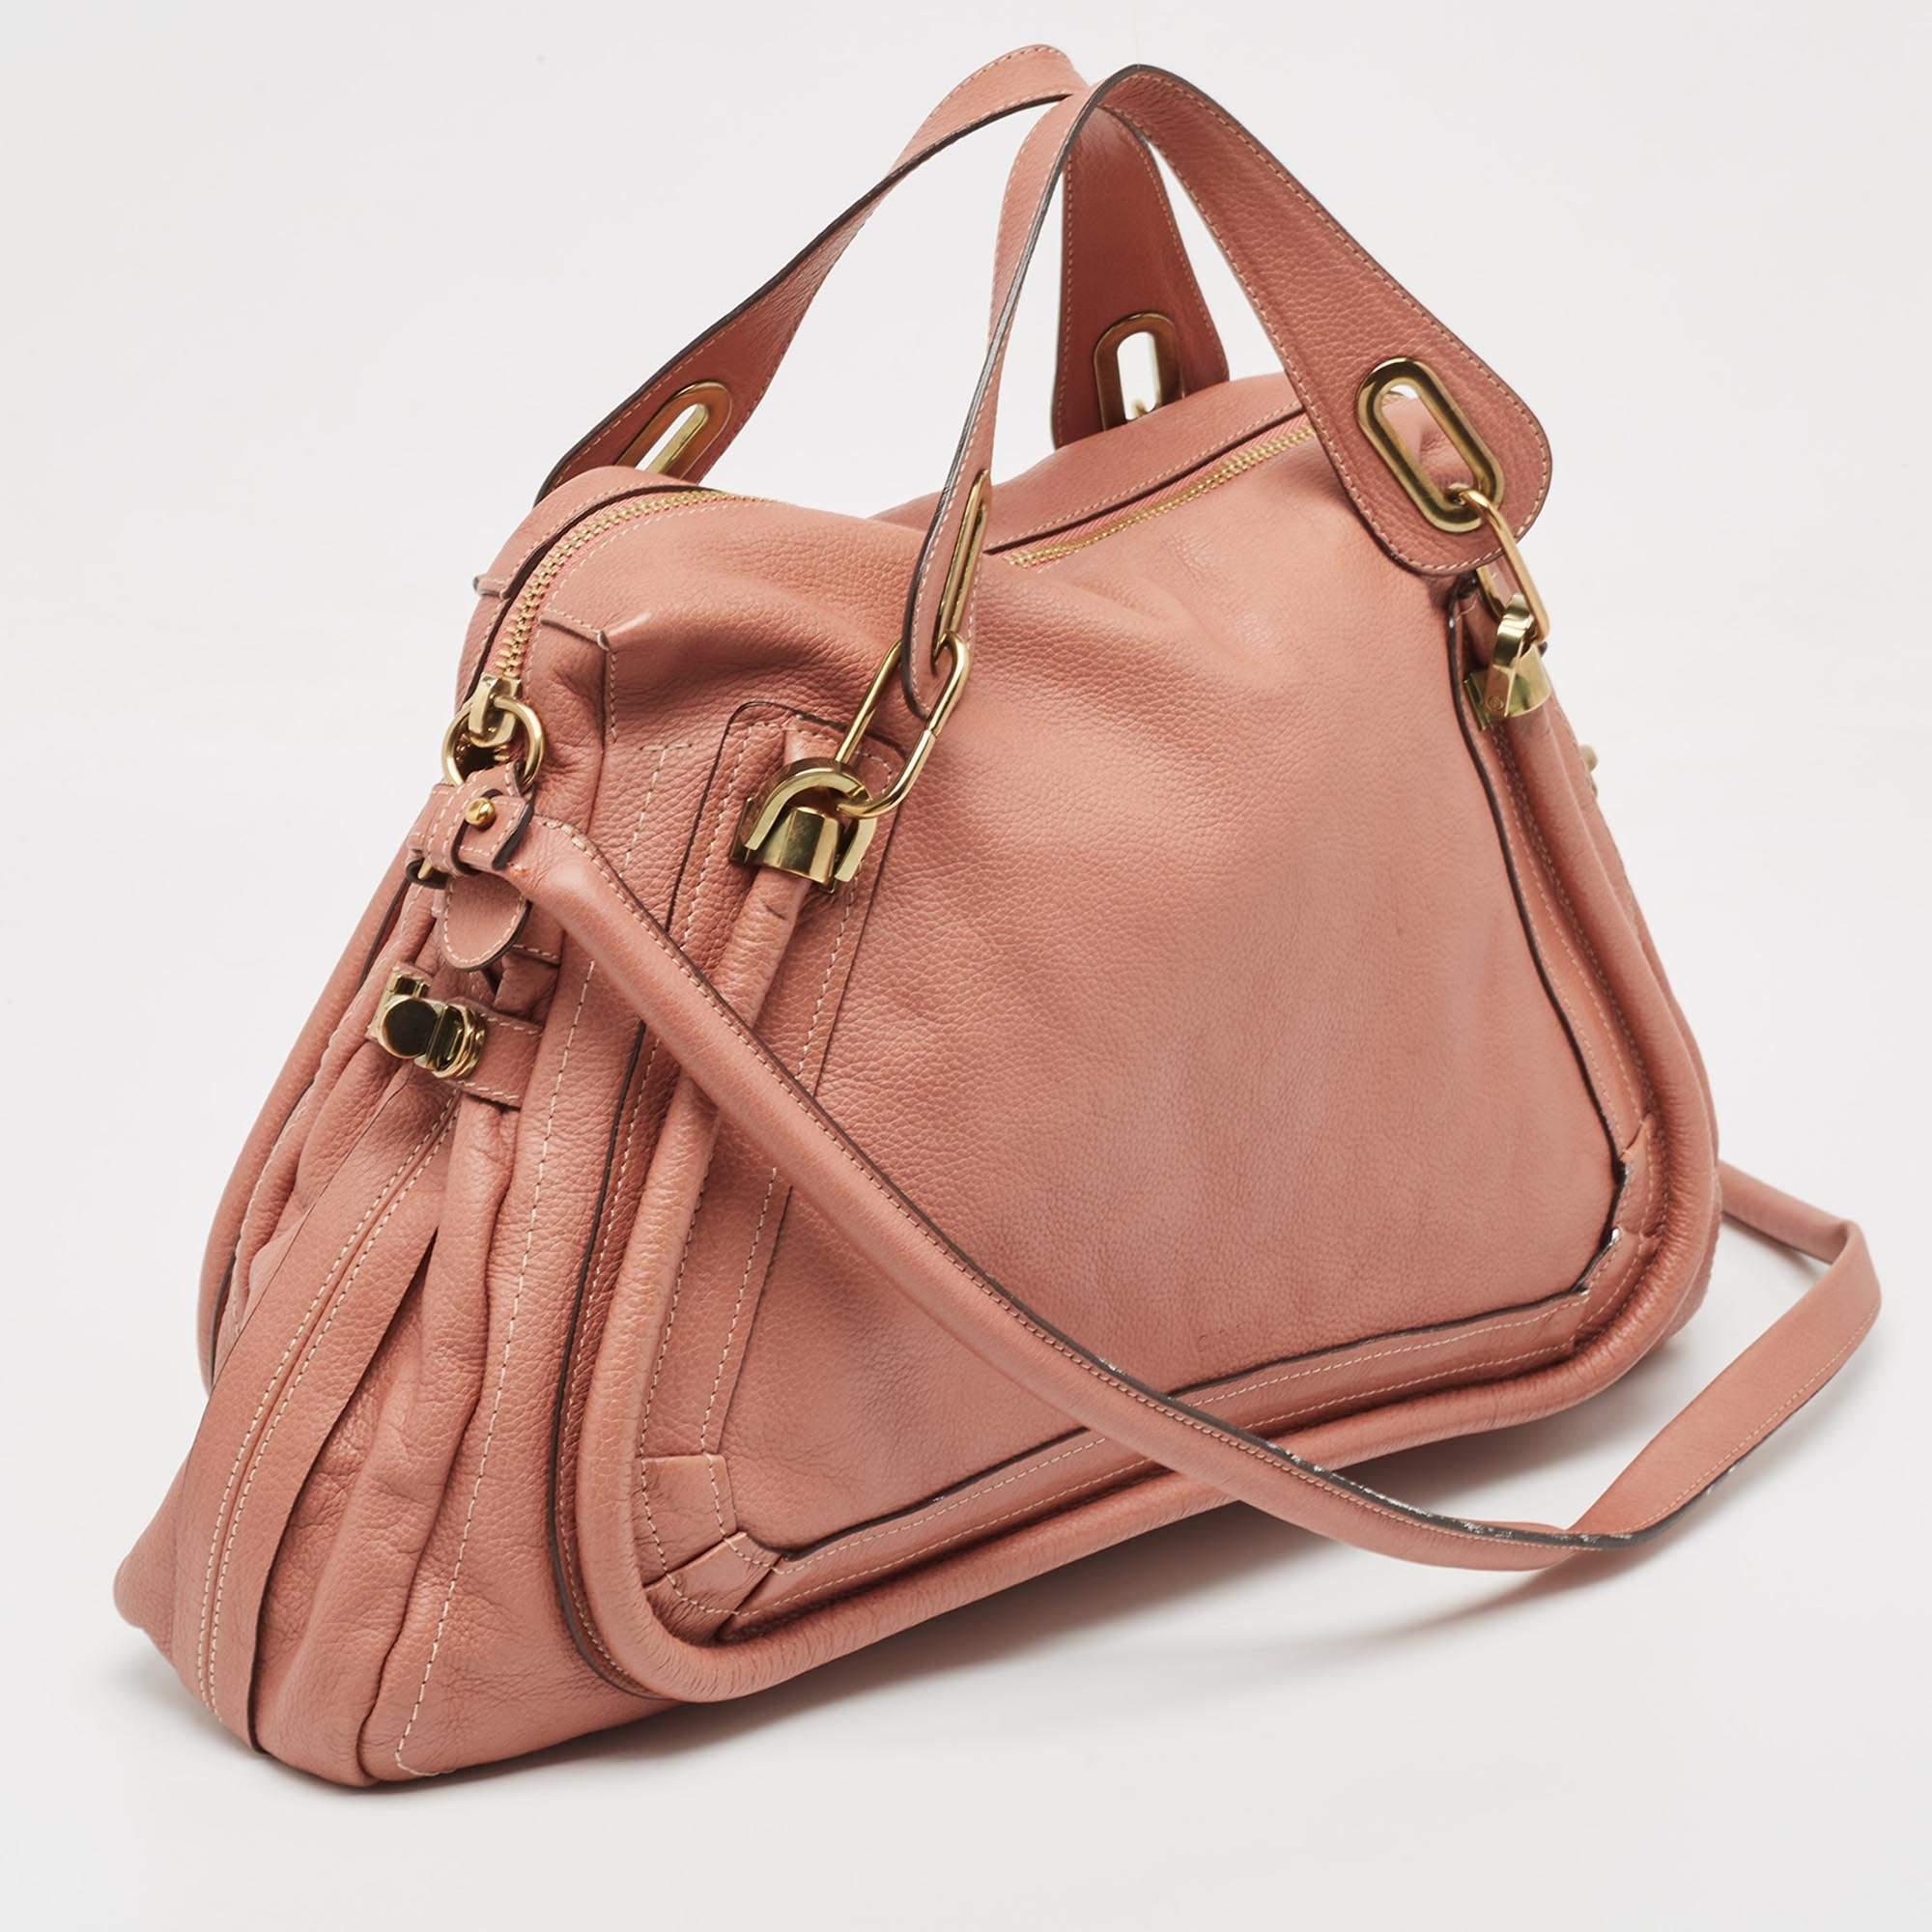 Chloe Old Rose Leather Large Paraty Shoulder Bag For Sale 1